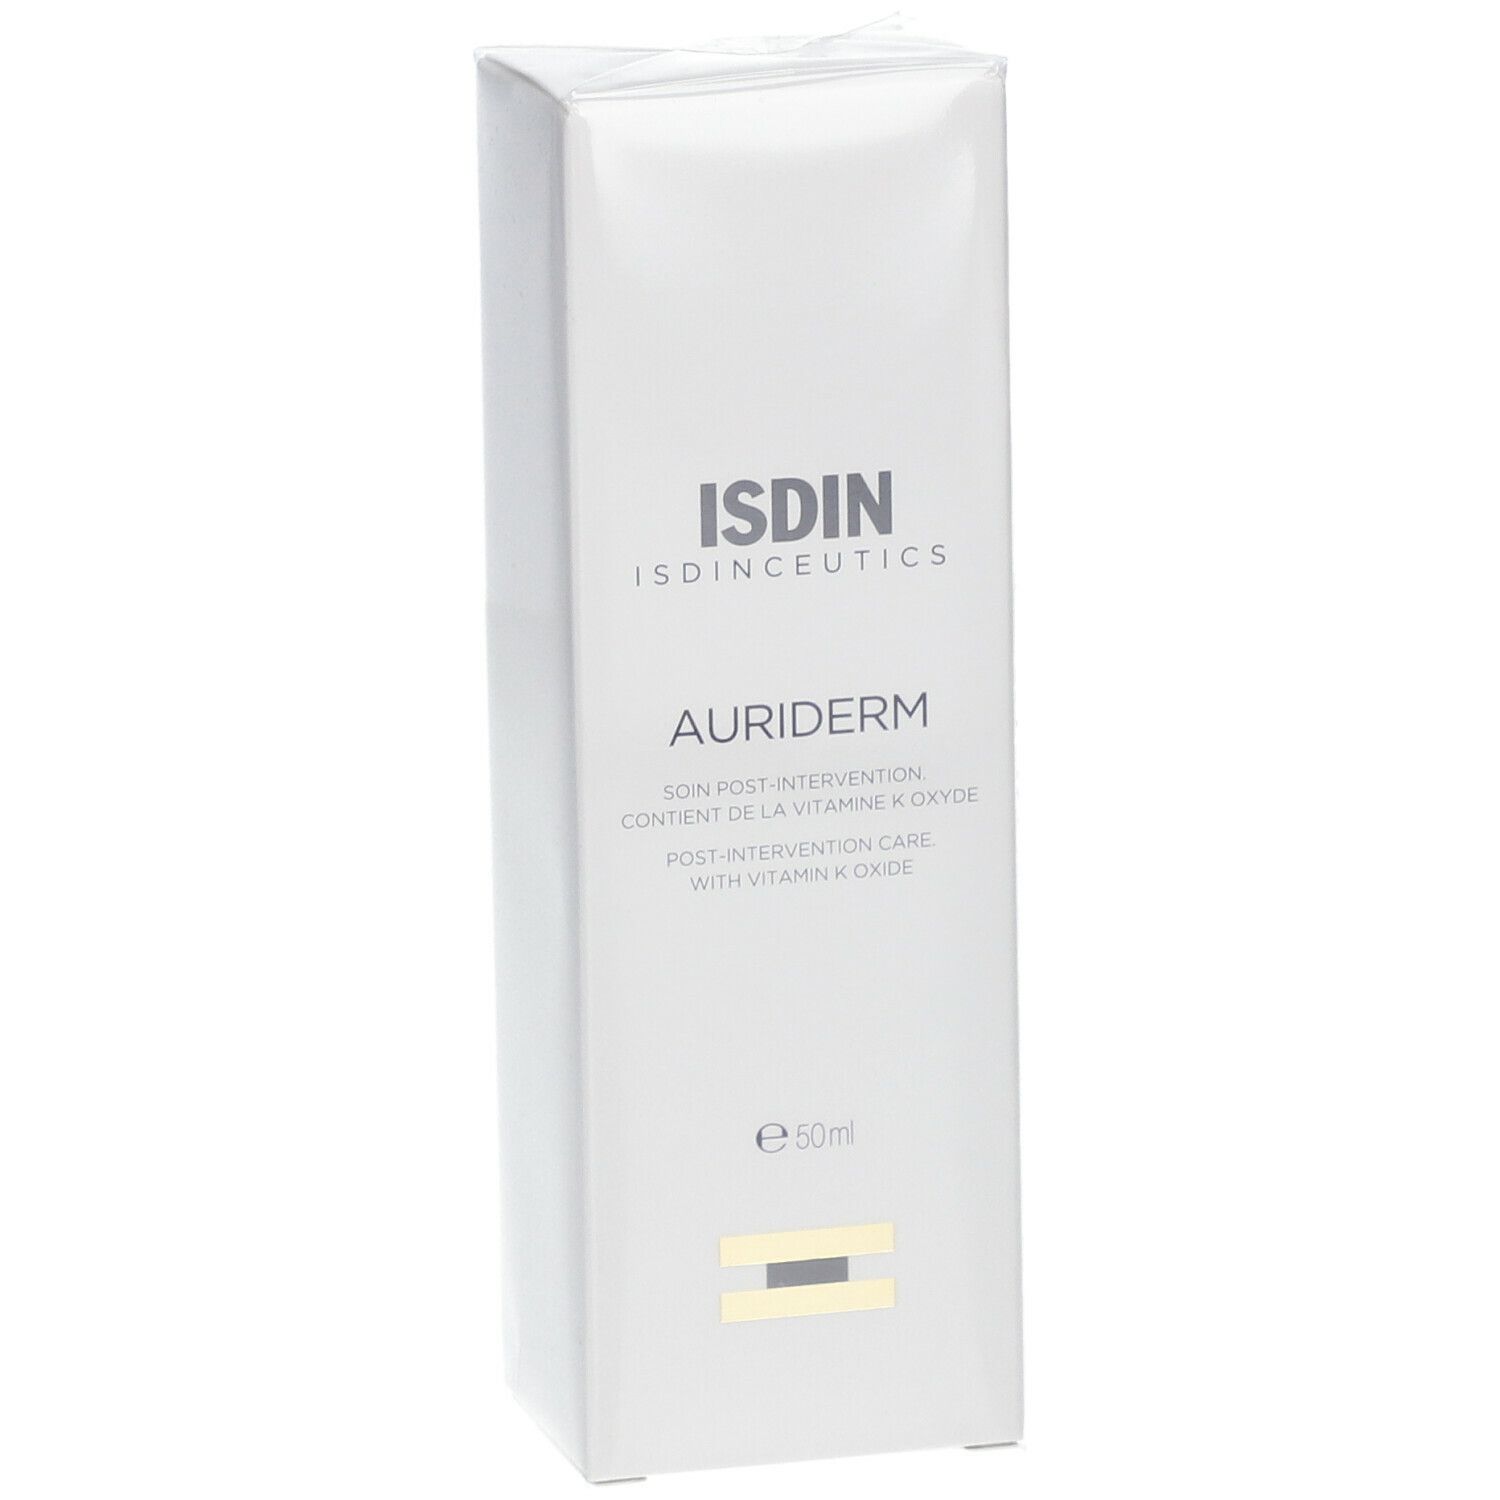 ISDIN Isdinceutics Auriderm